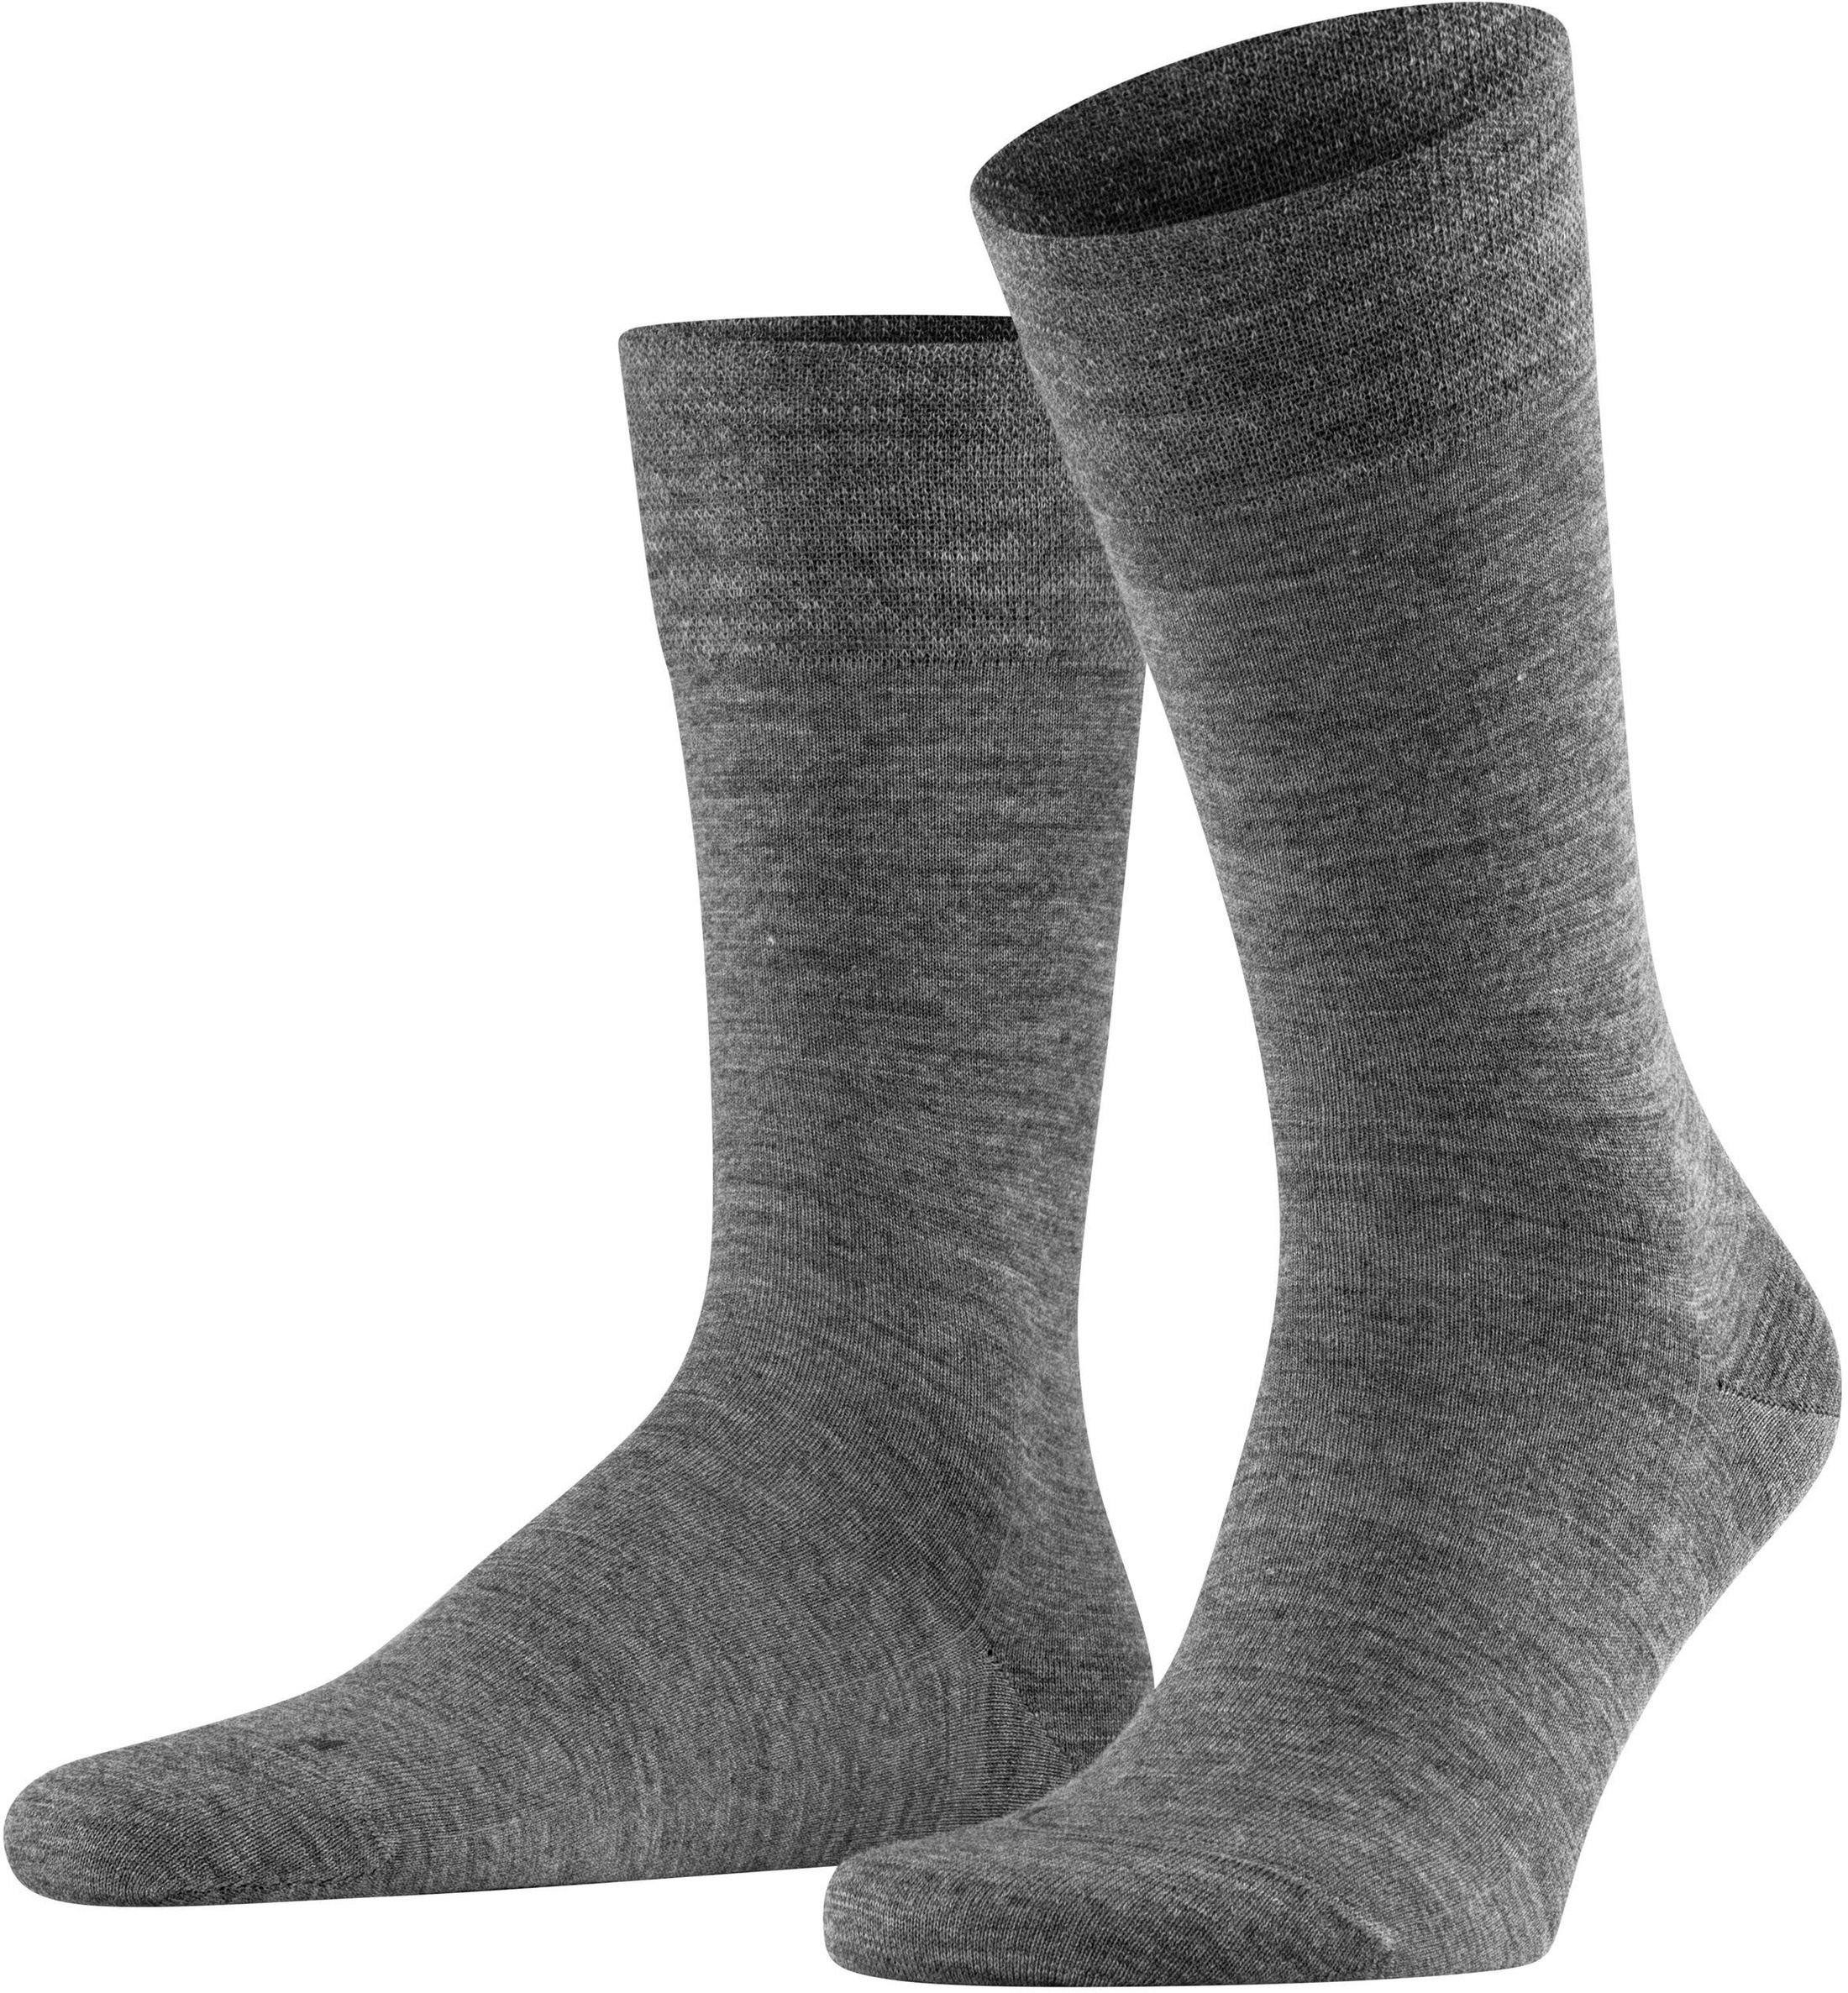 Falke Sock Sensitive Berlin Anthracite Grey Dark Grey size 39-42